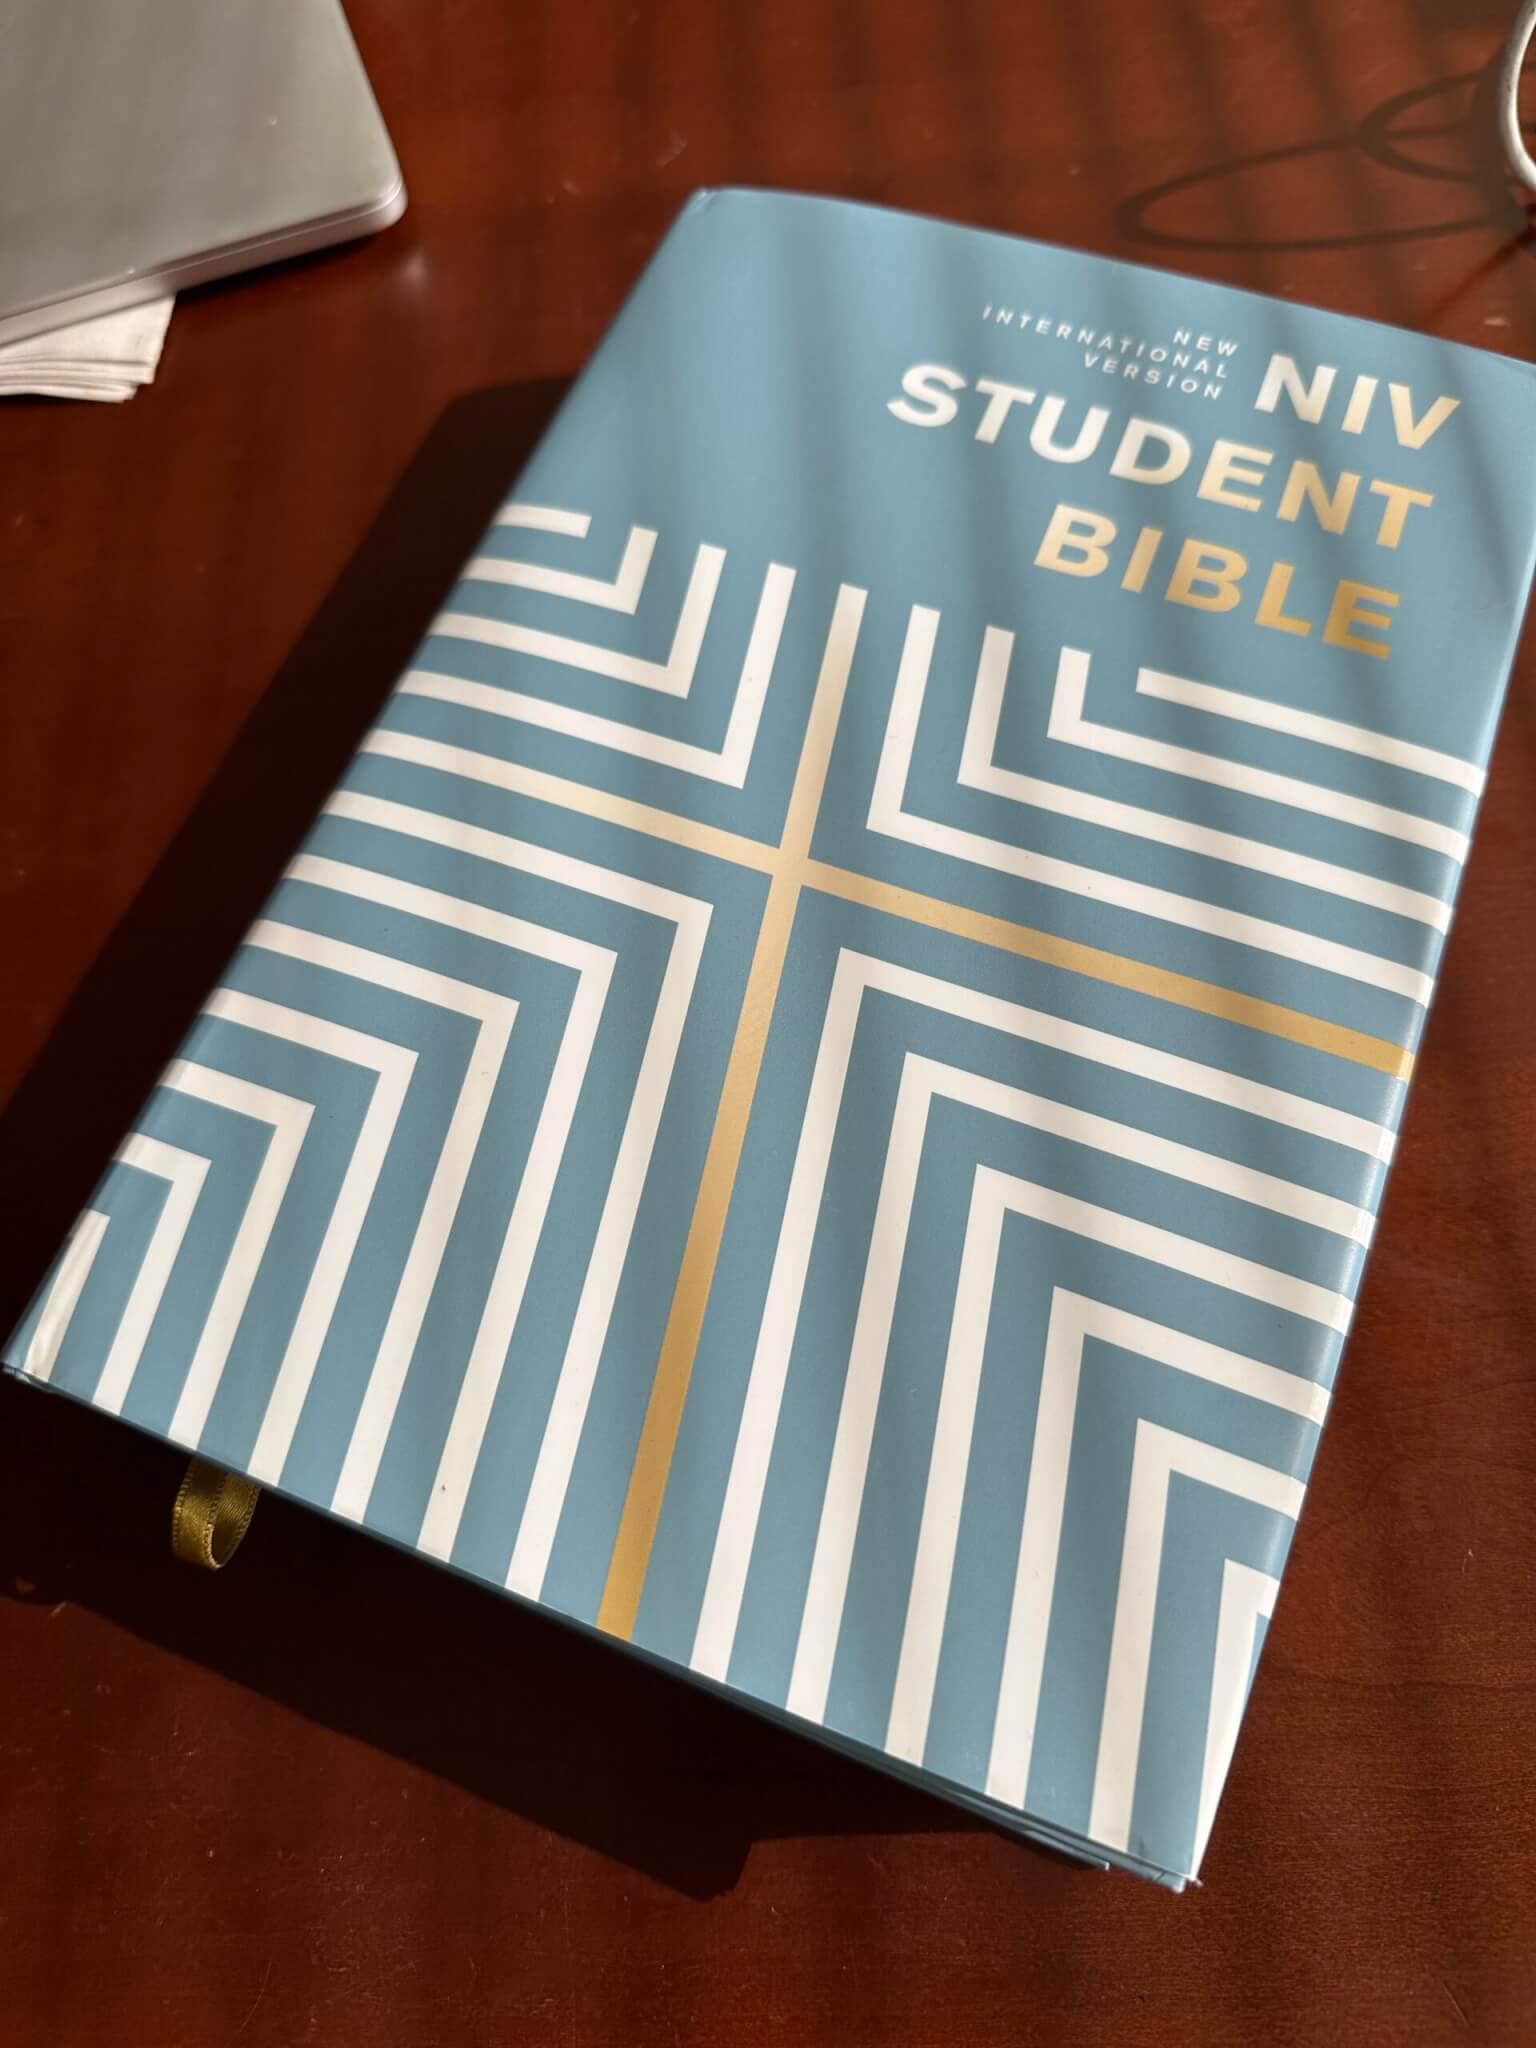 NIV student study bible